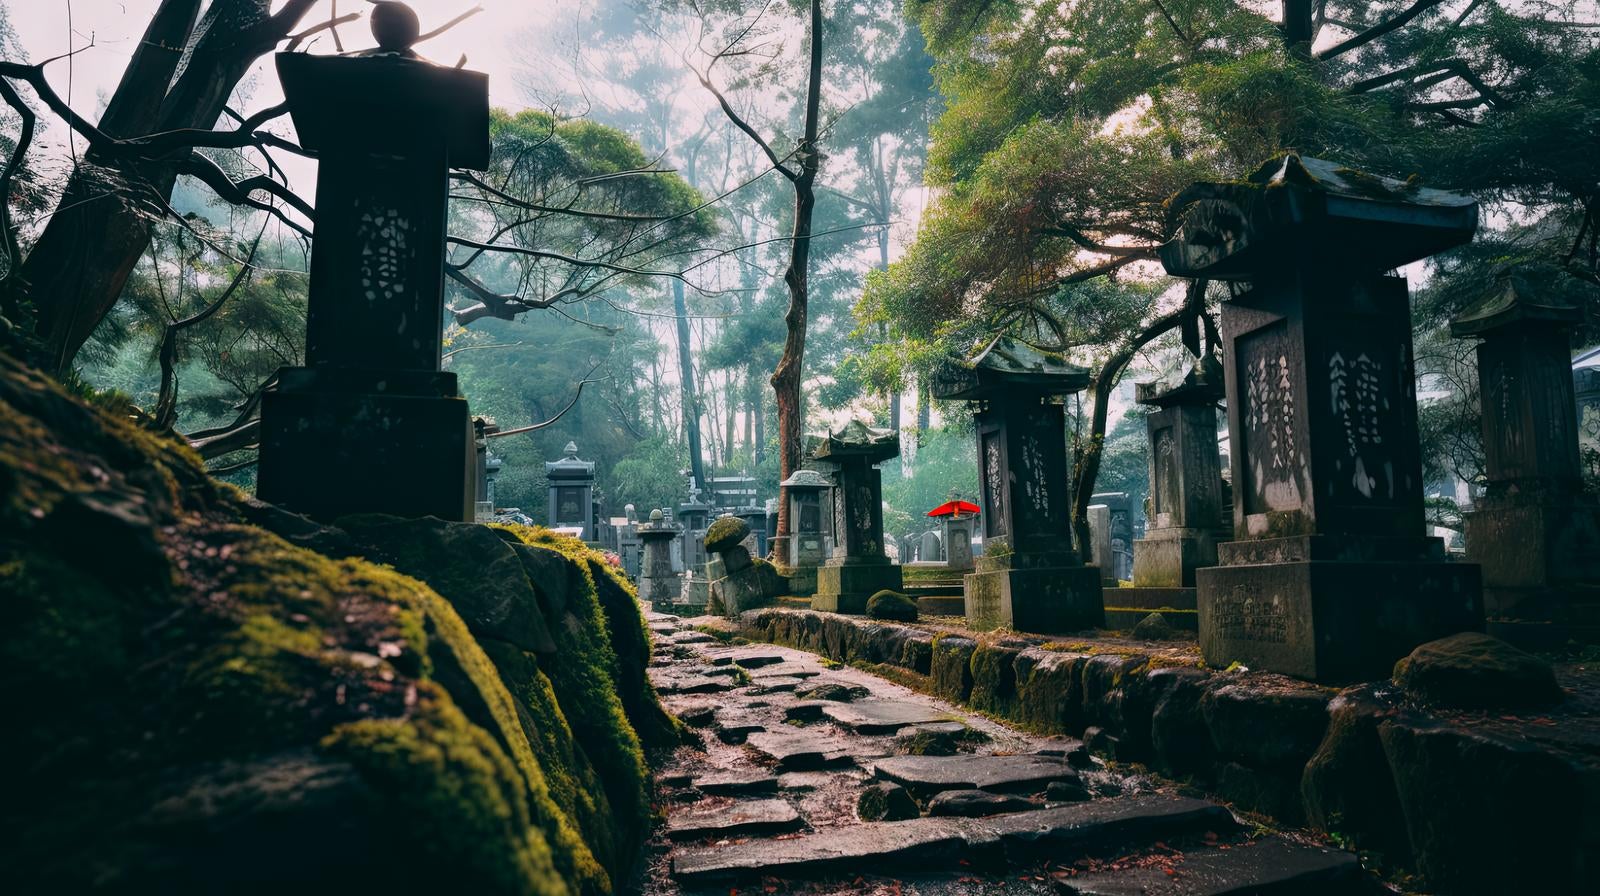 「奇妙な墓地の様子」の写真